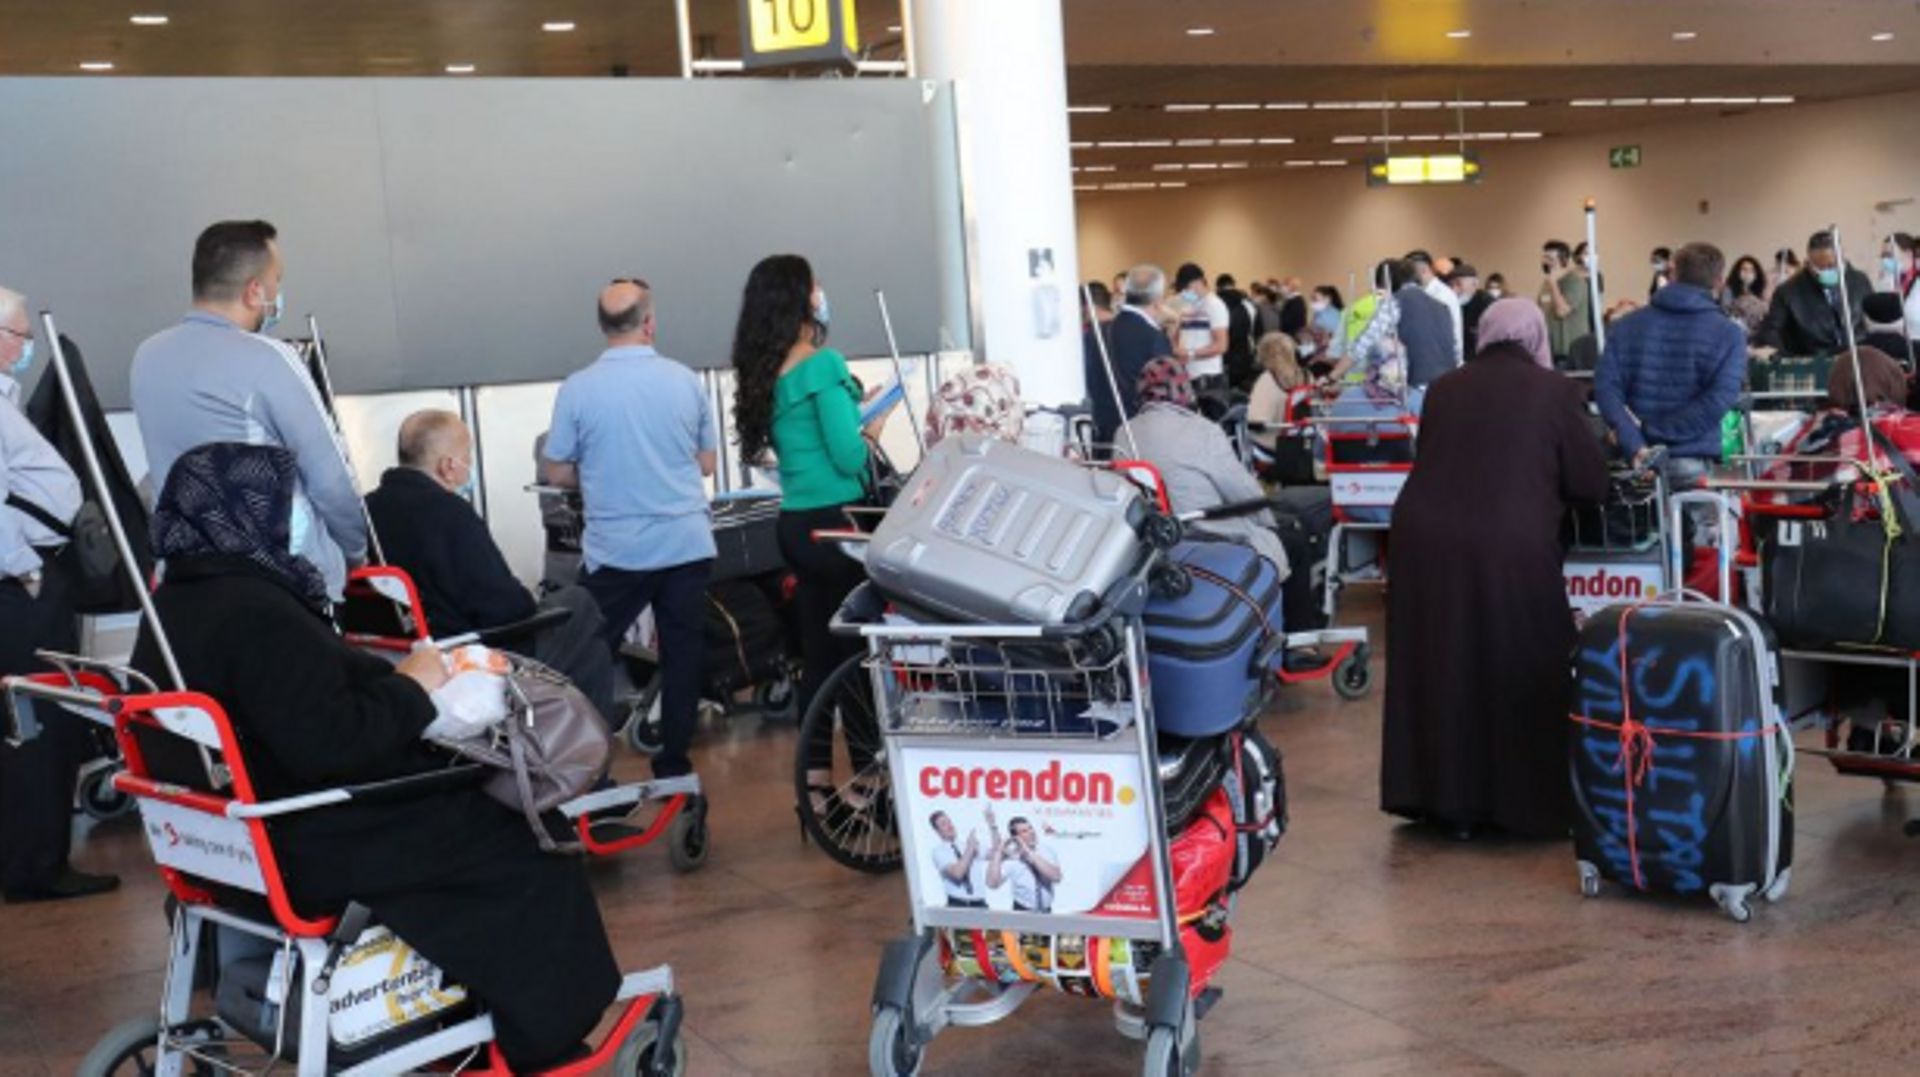 Brussels Airport : Les syndicats de Swissport verront mercredi pour la première fois la direction d’Alyzia